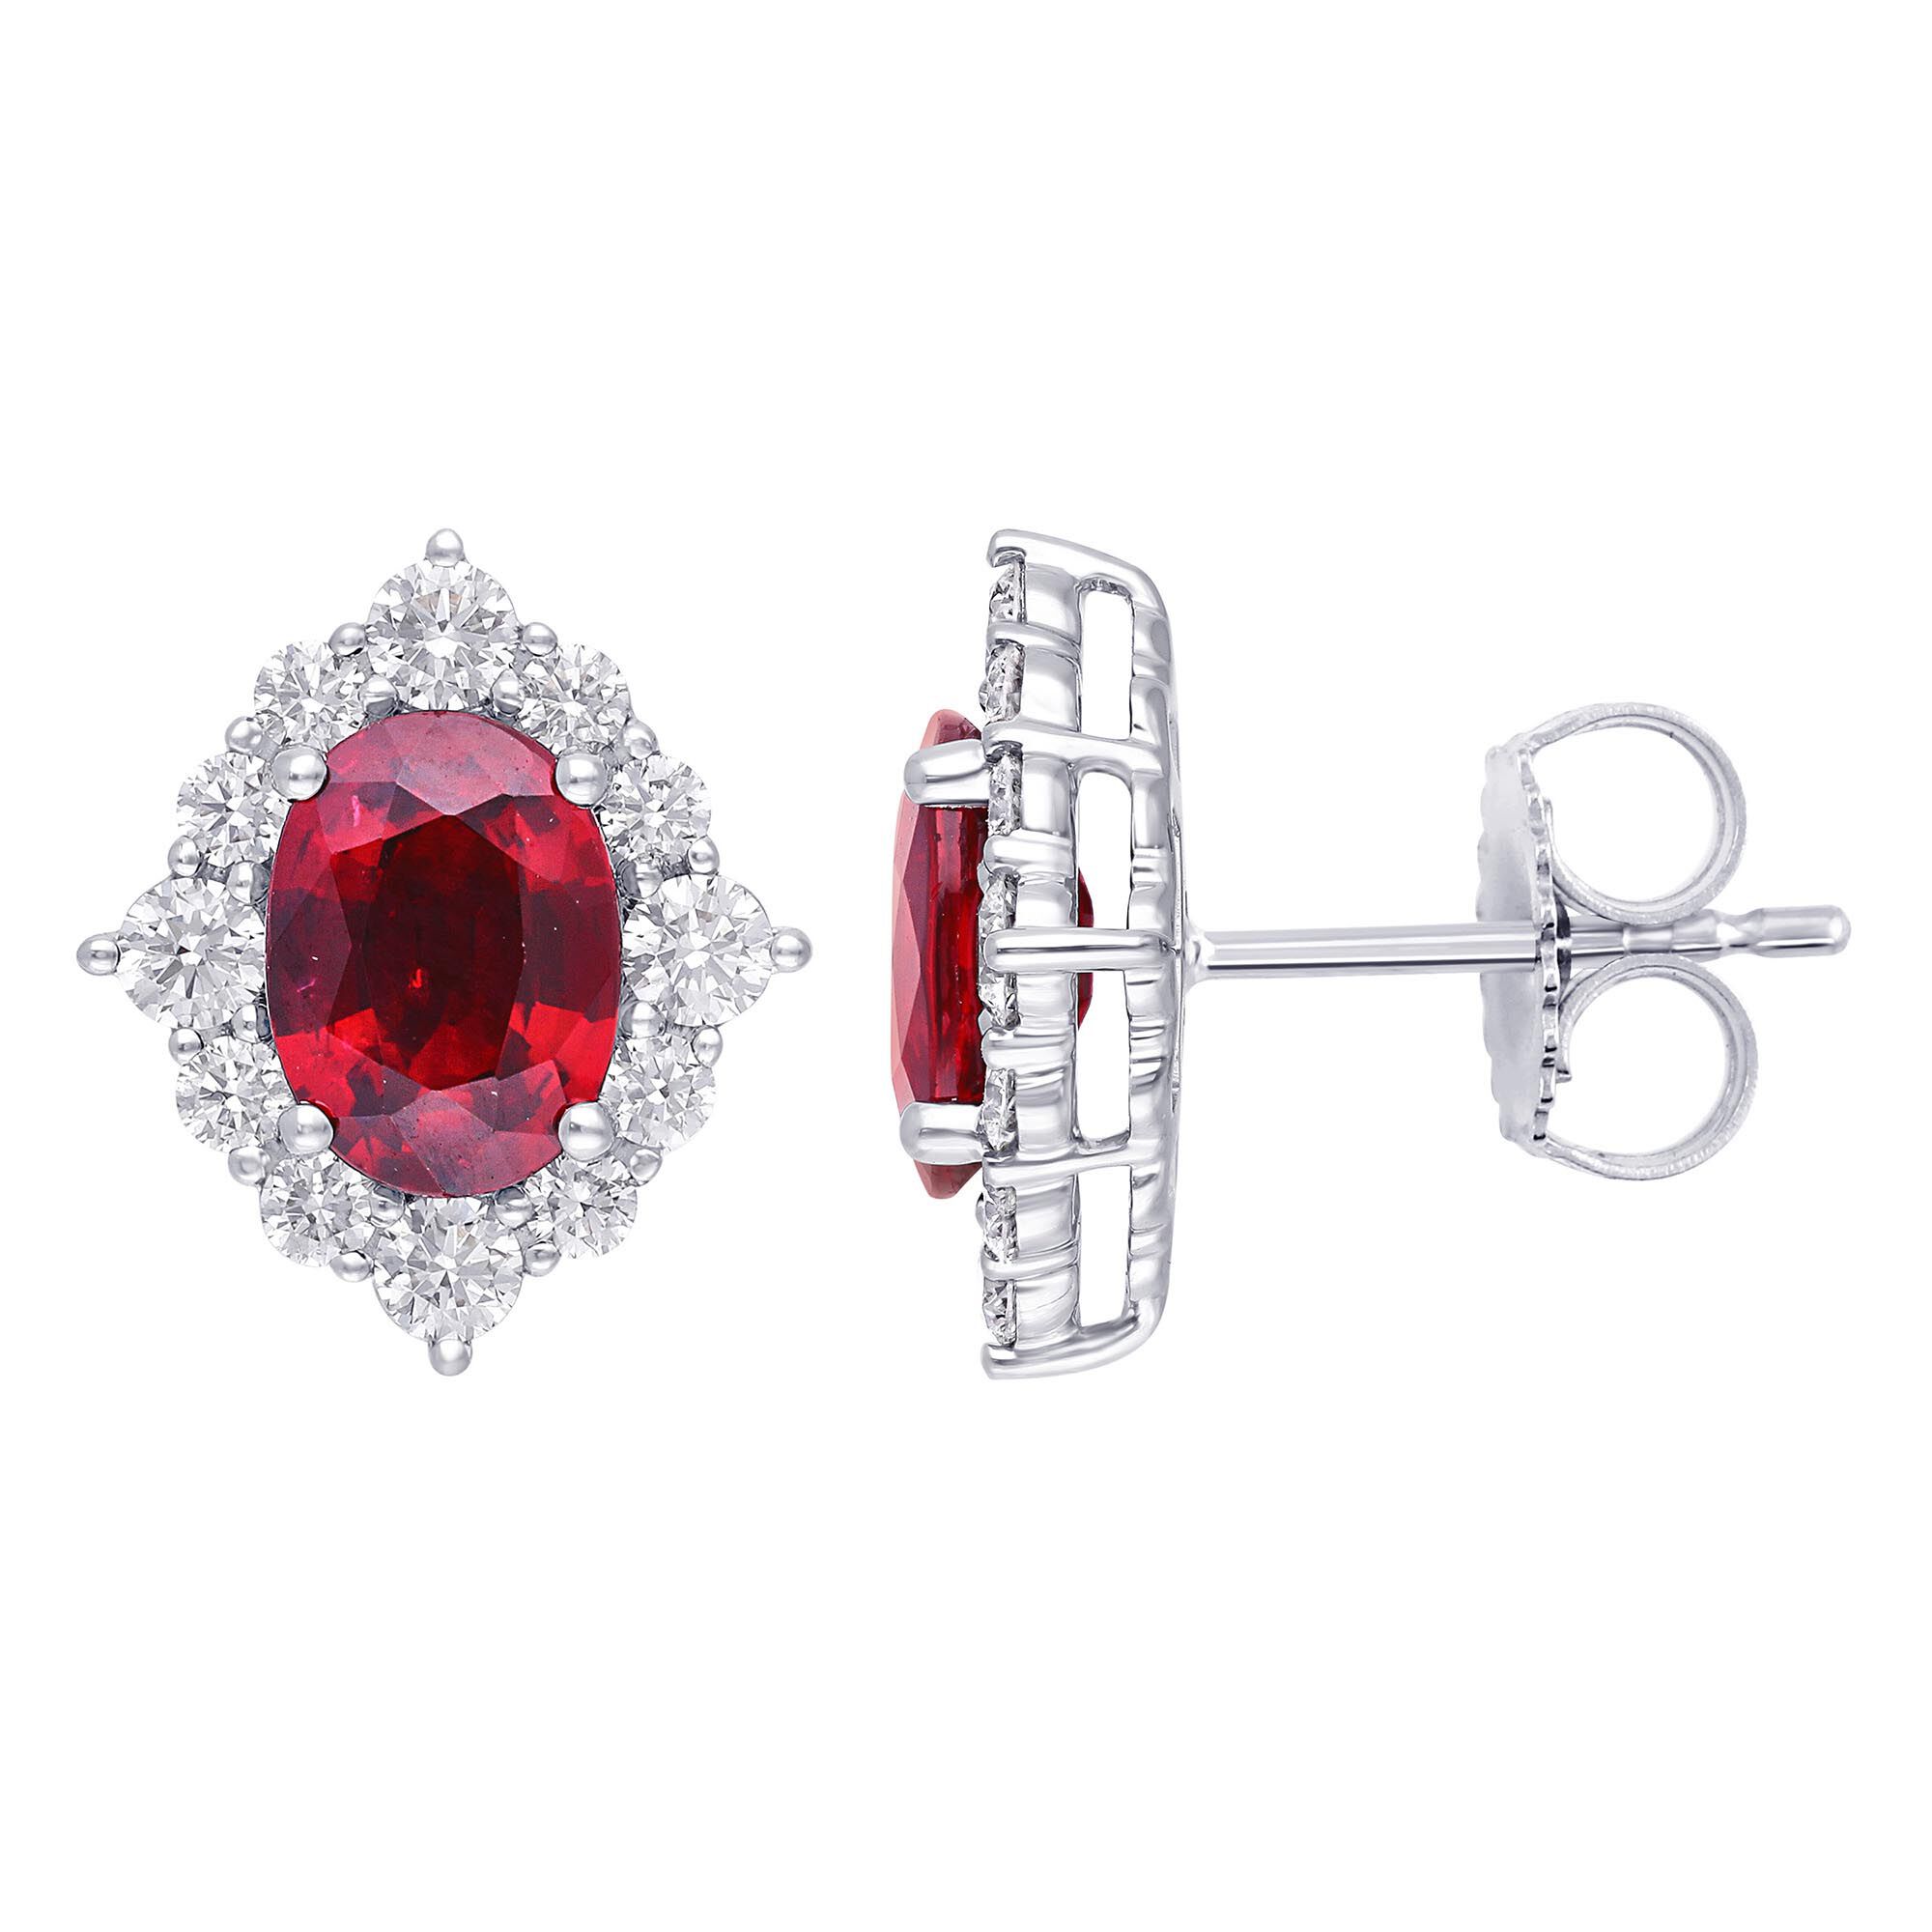 Ruby Jewelry | Maison Birks | Maison Birks Canada